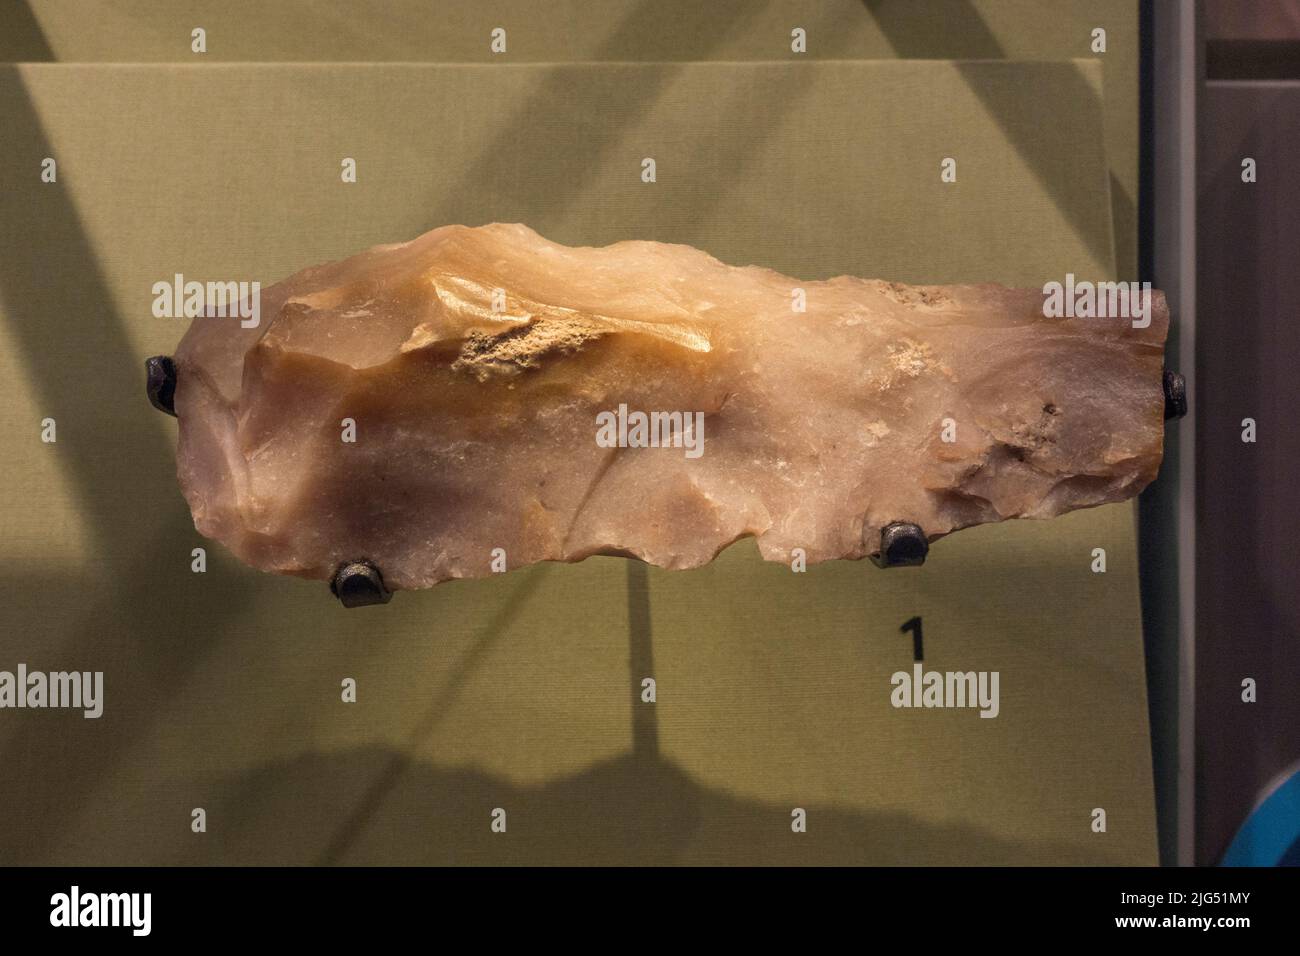 Un pick de piedra originario de Carnac, Francia (c.10.000-4.500 aC), pero descubierto en Inglaterra en exhibición en el Reino Unido. Foto de stock